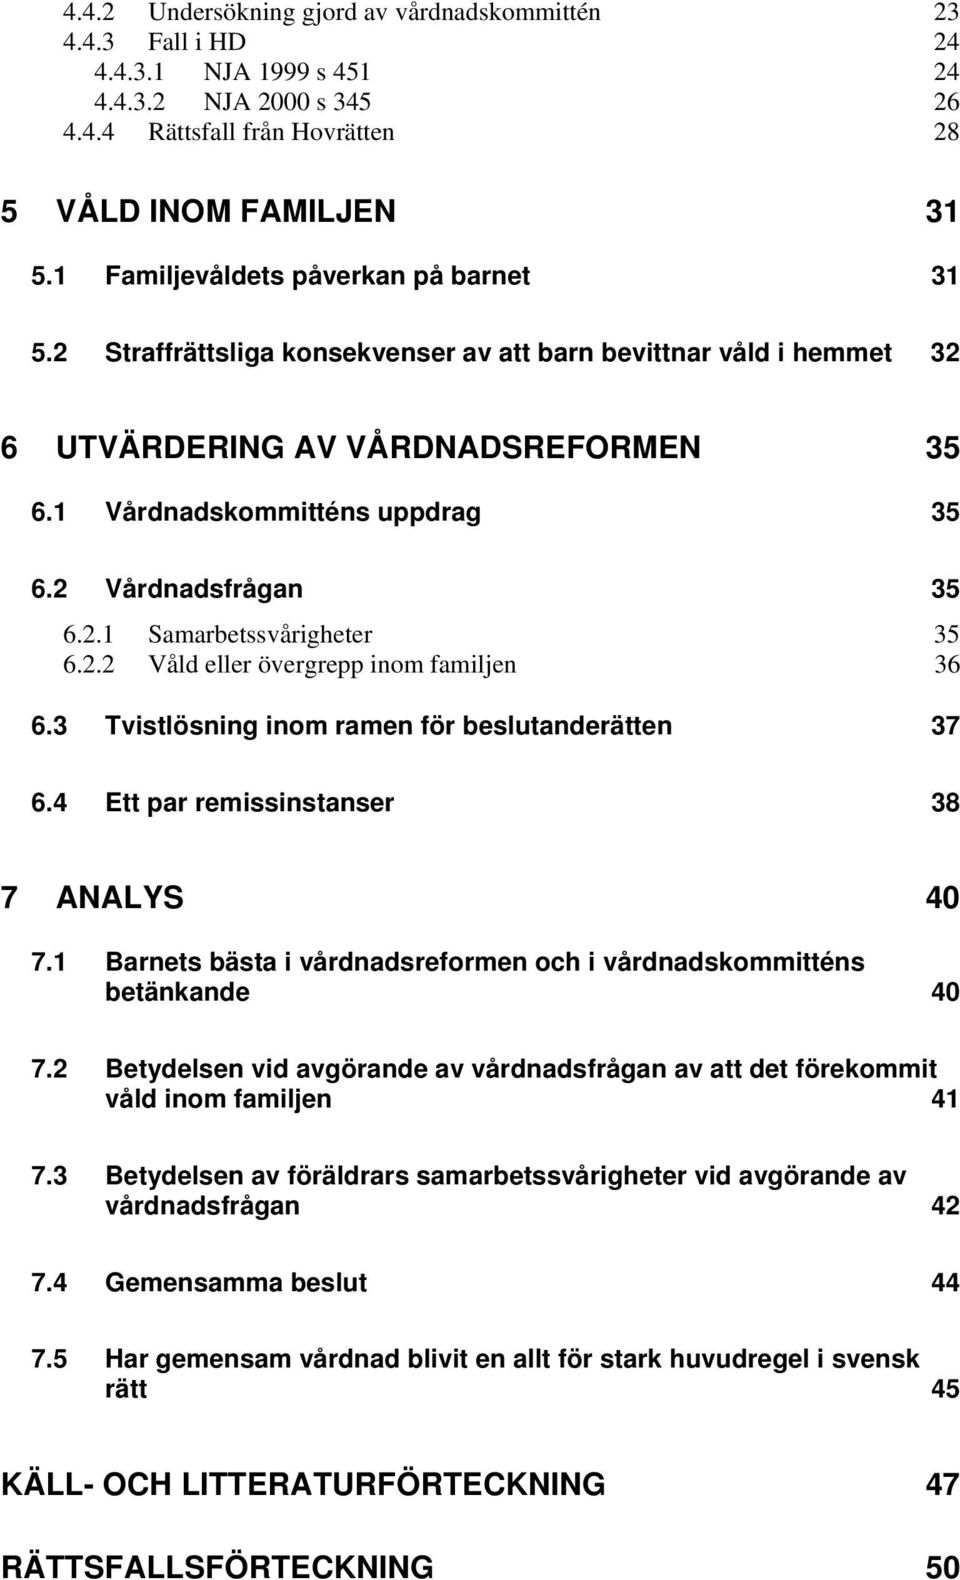 Gemensam vårdnad en allt för stark huvudregel i svensk rätt? - PDF Free  Download